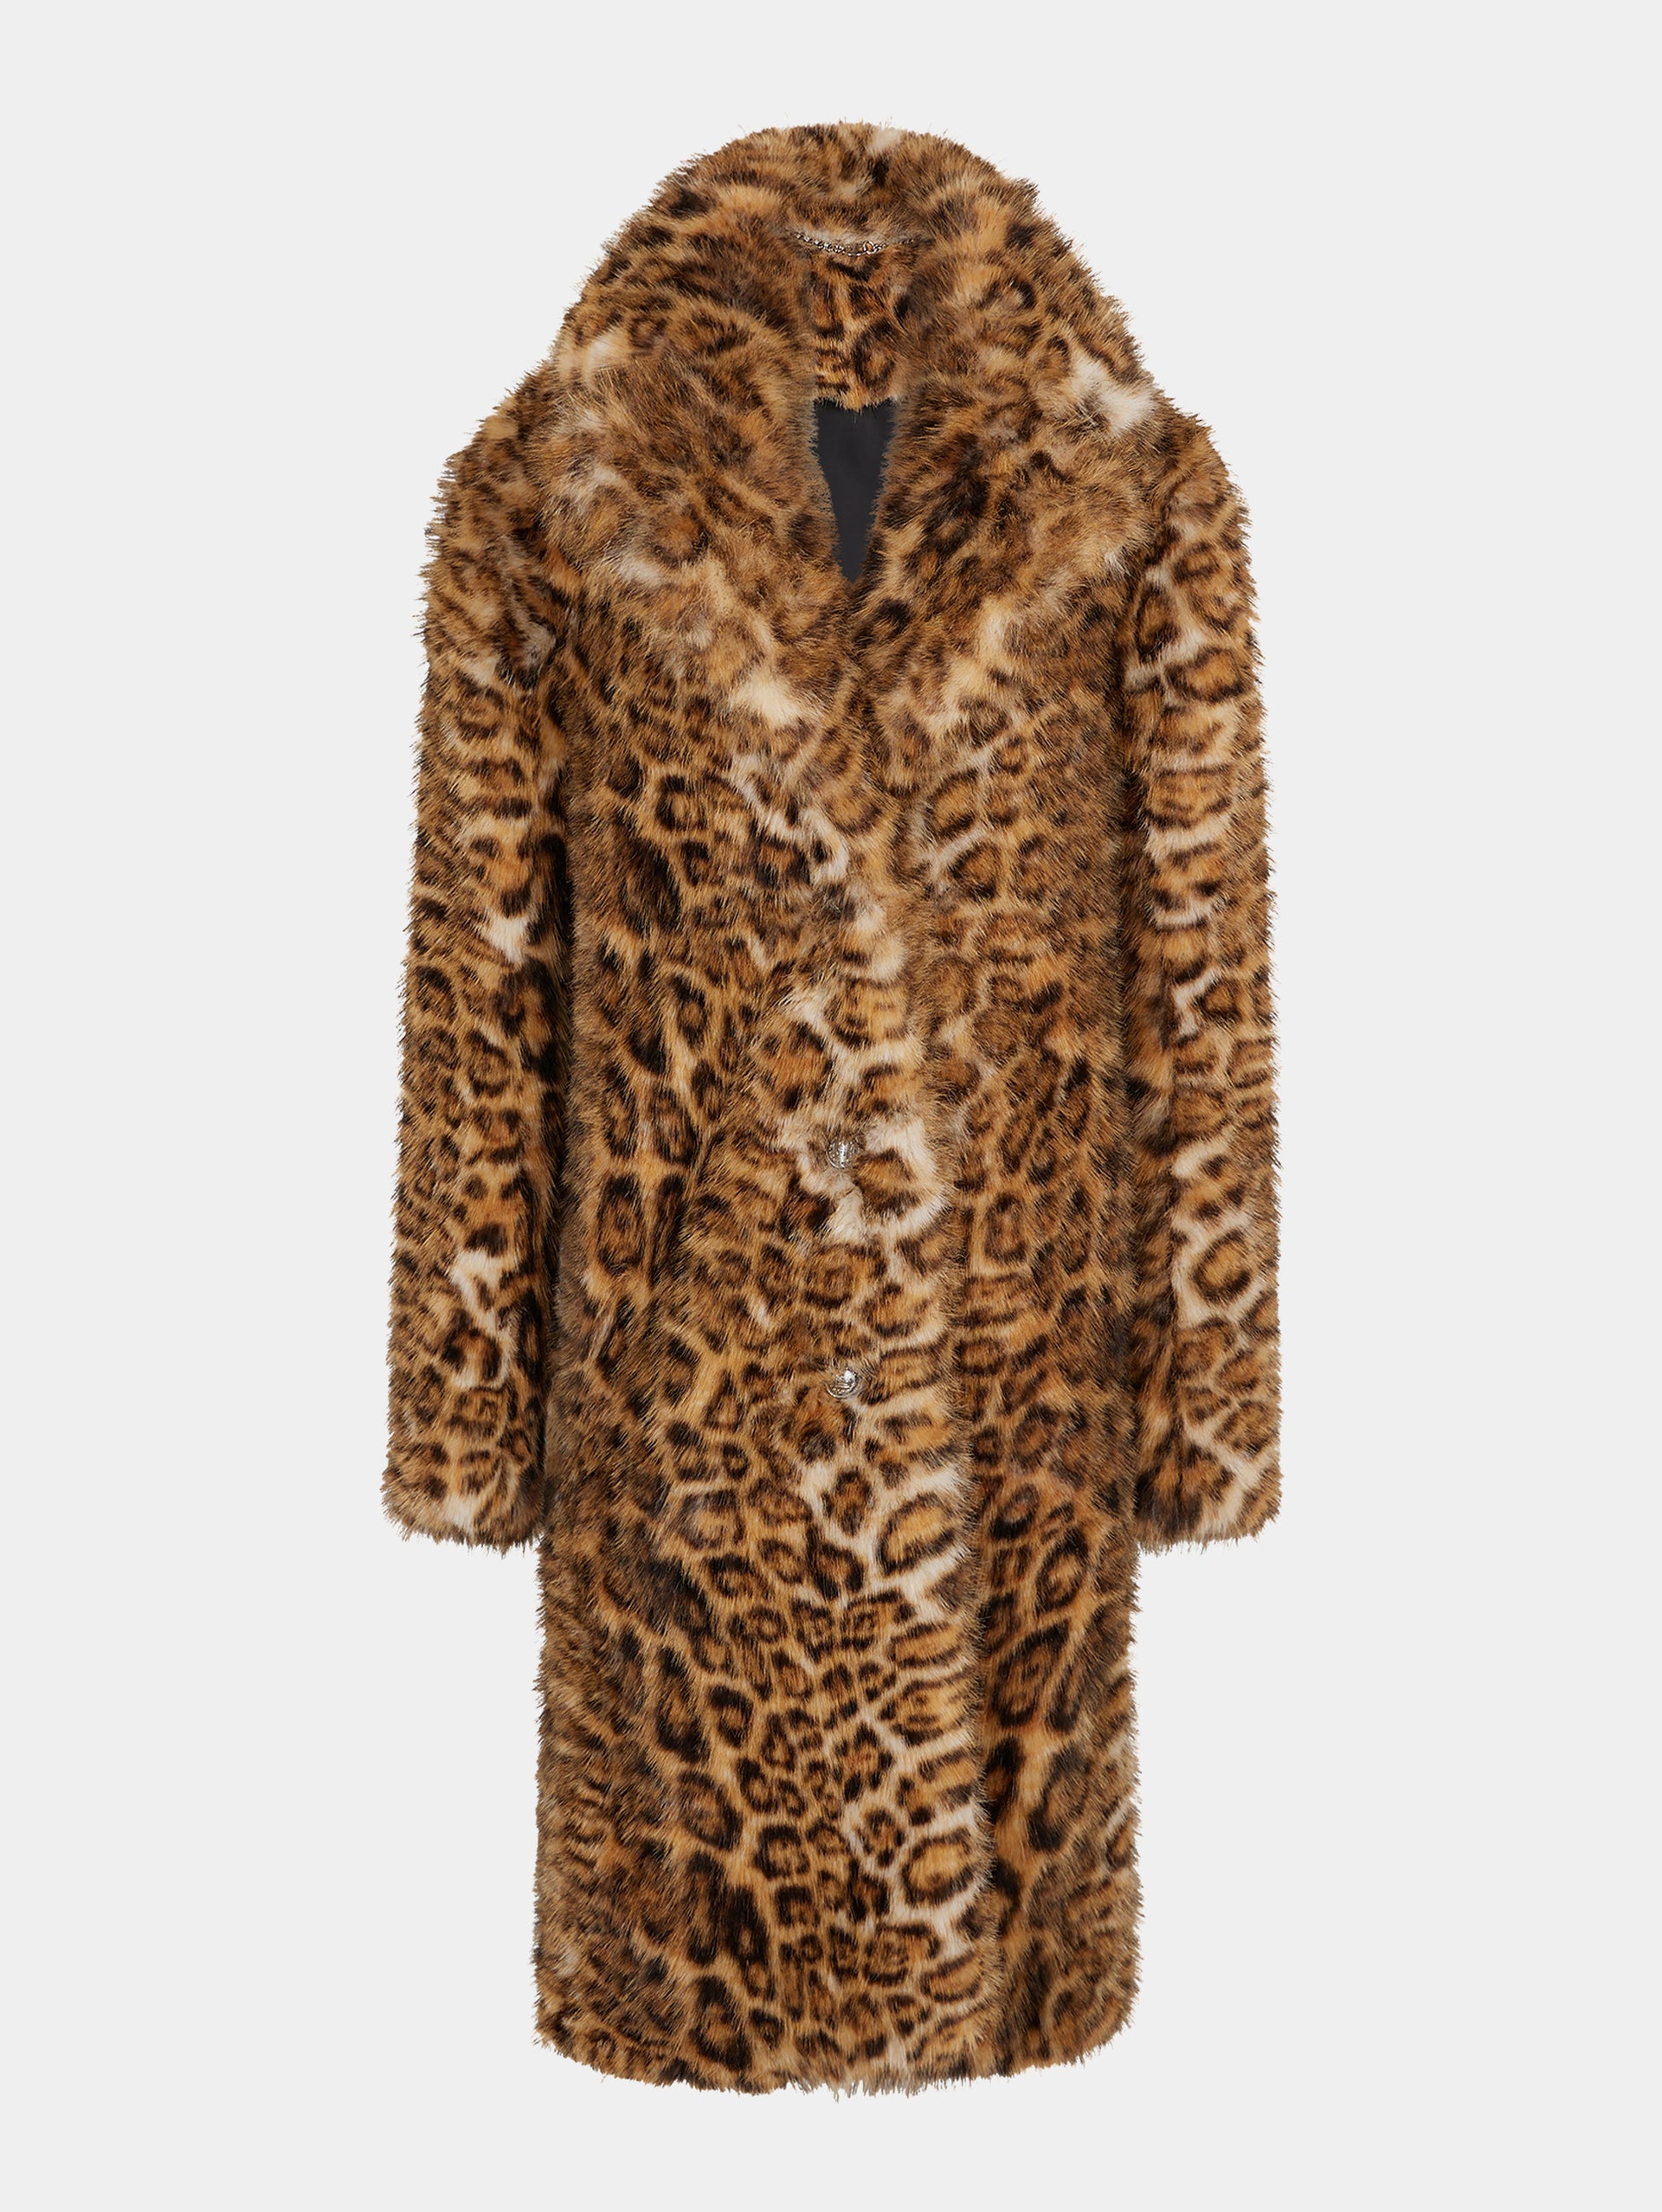 Manteau imprimé léopard